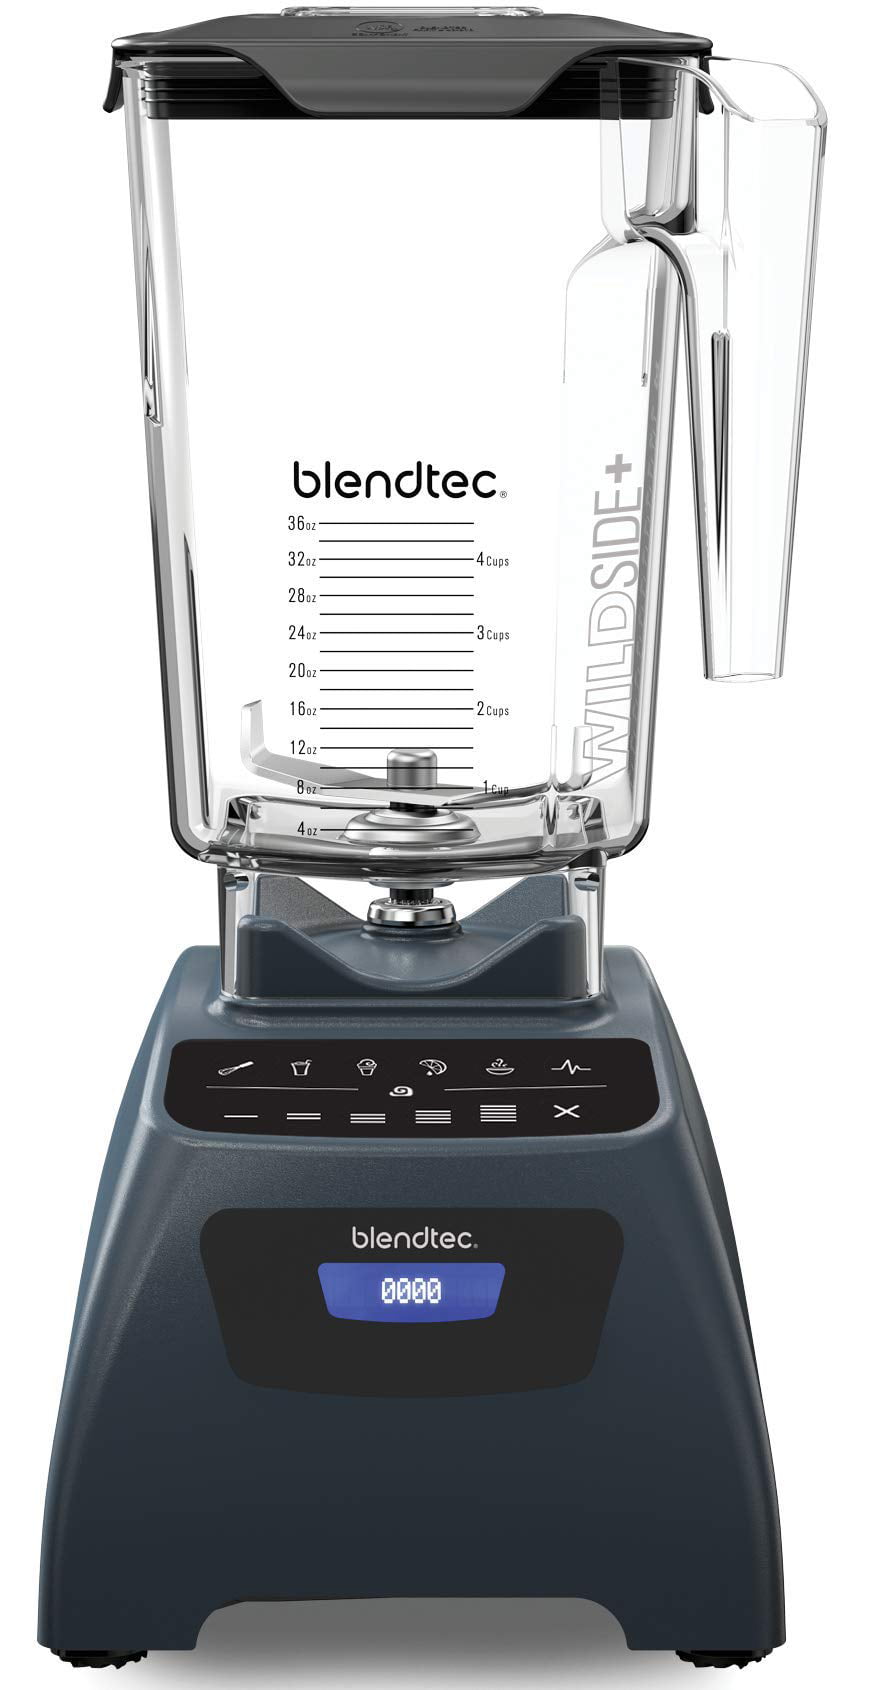 Blendtec Stealth 885 Commercial Blender Black for sale online 